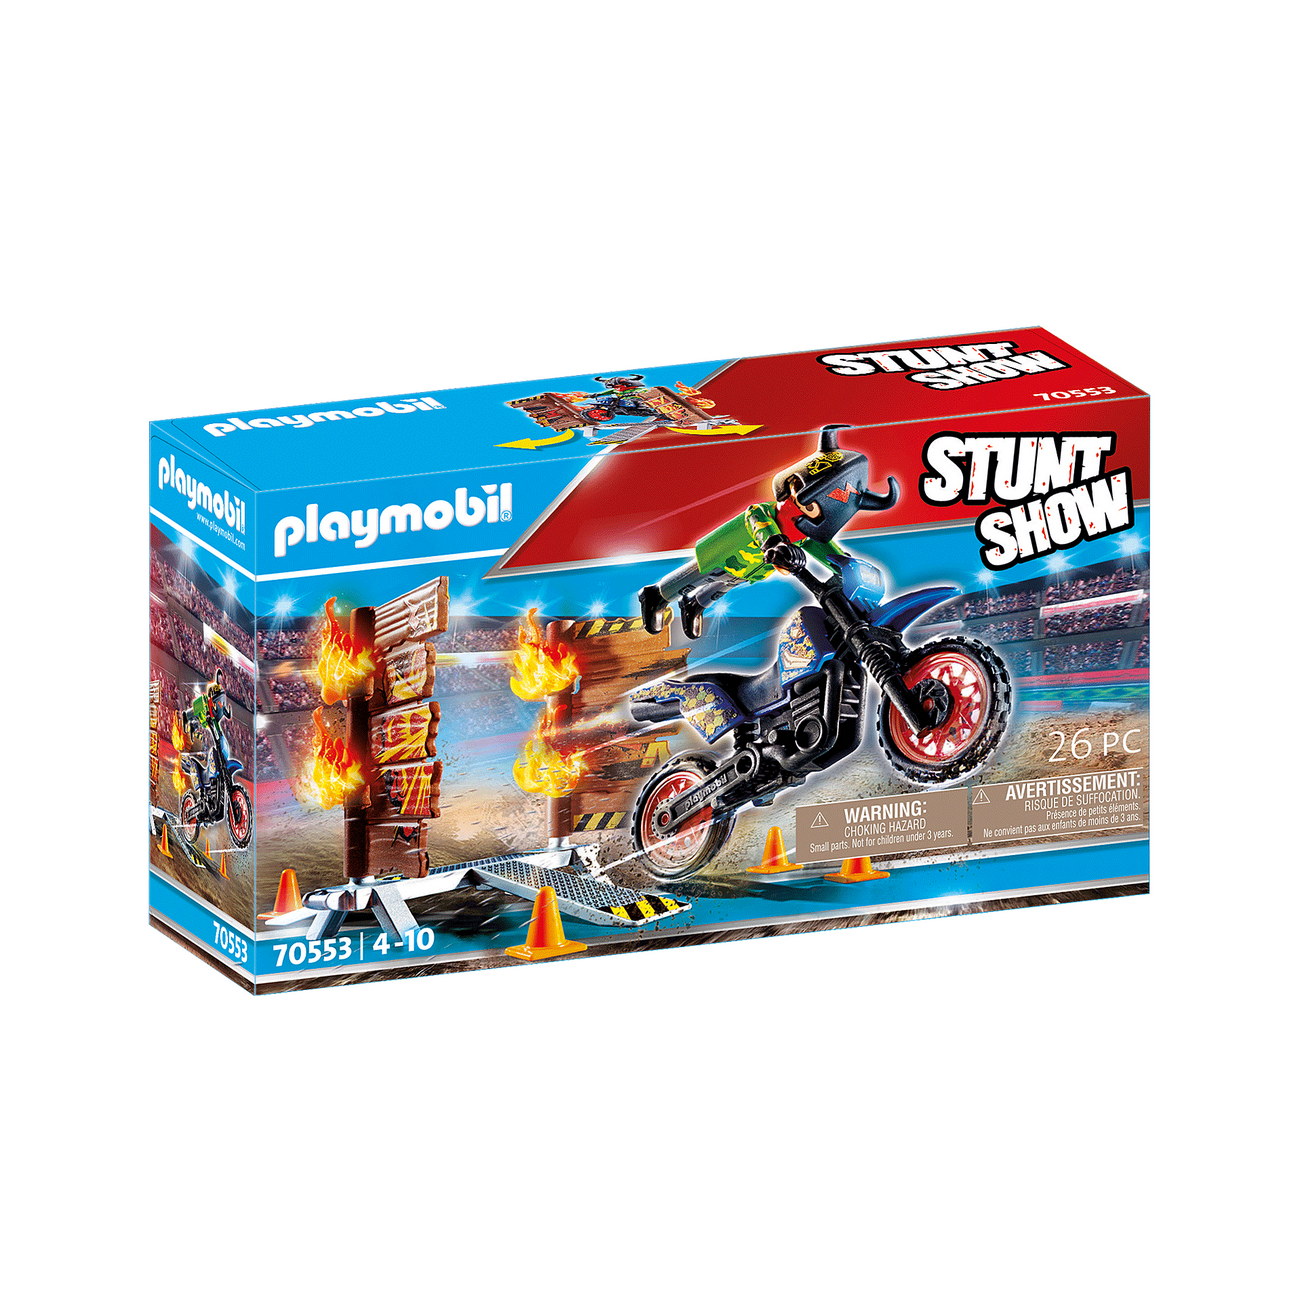 Playmobil 70553 - Stuntshow Motorrad mit Feuerwand - Stunt Show